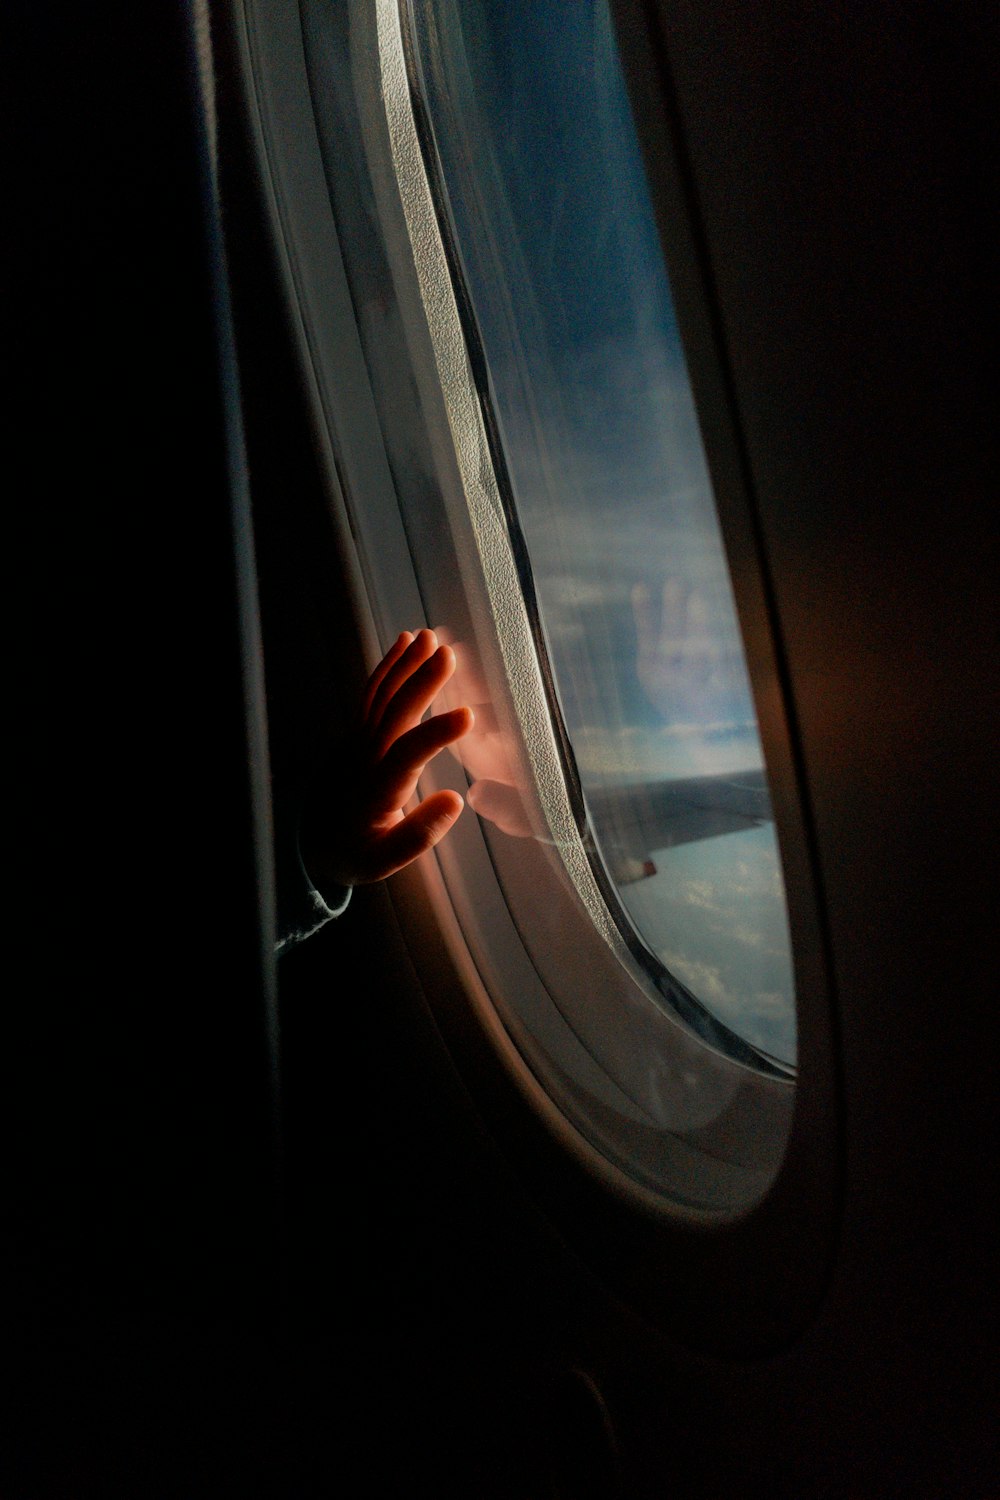 La mano de una persona en la ventana de un avión